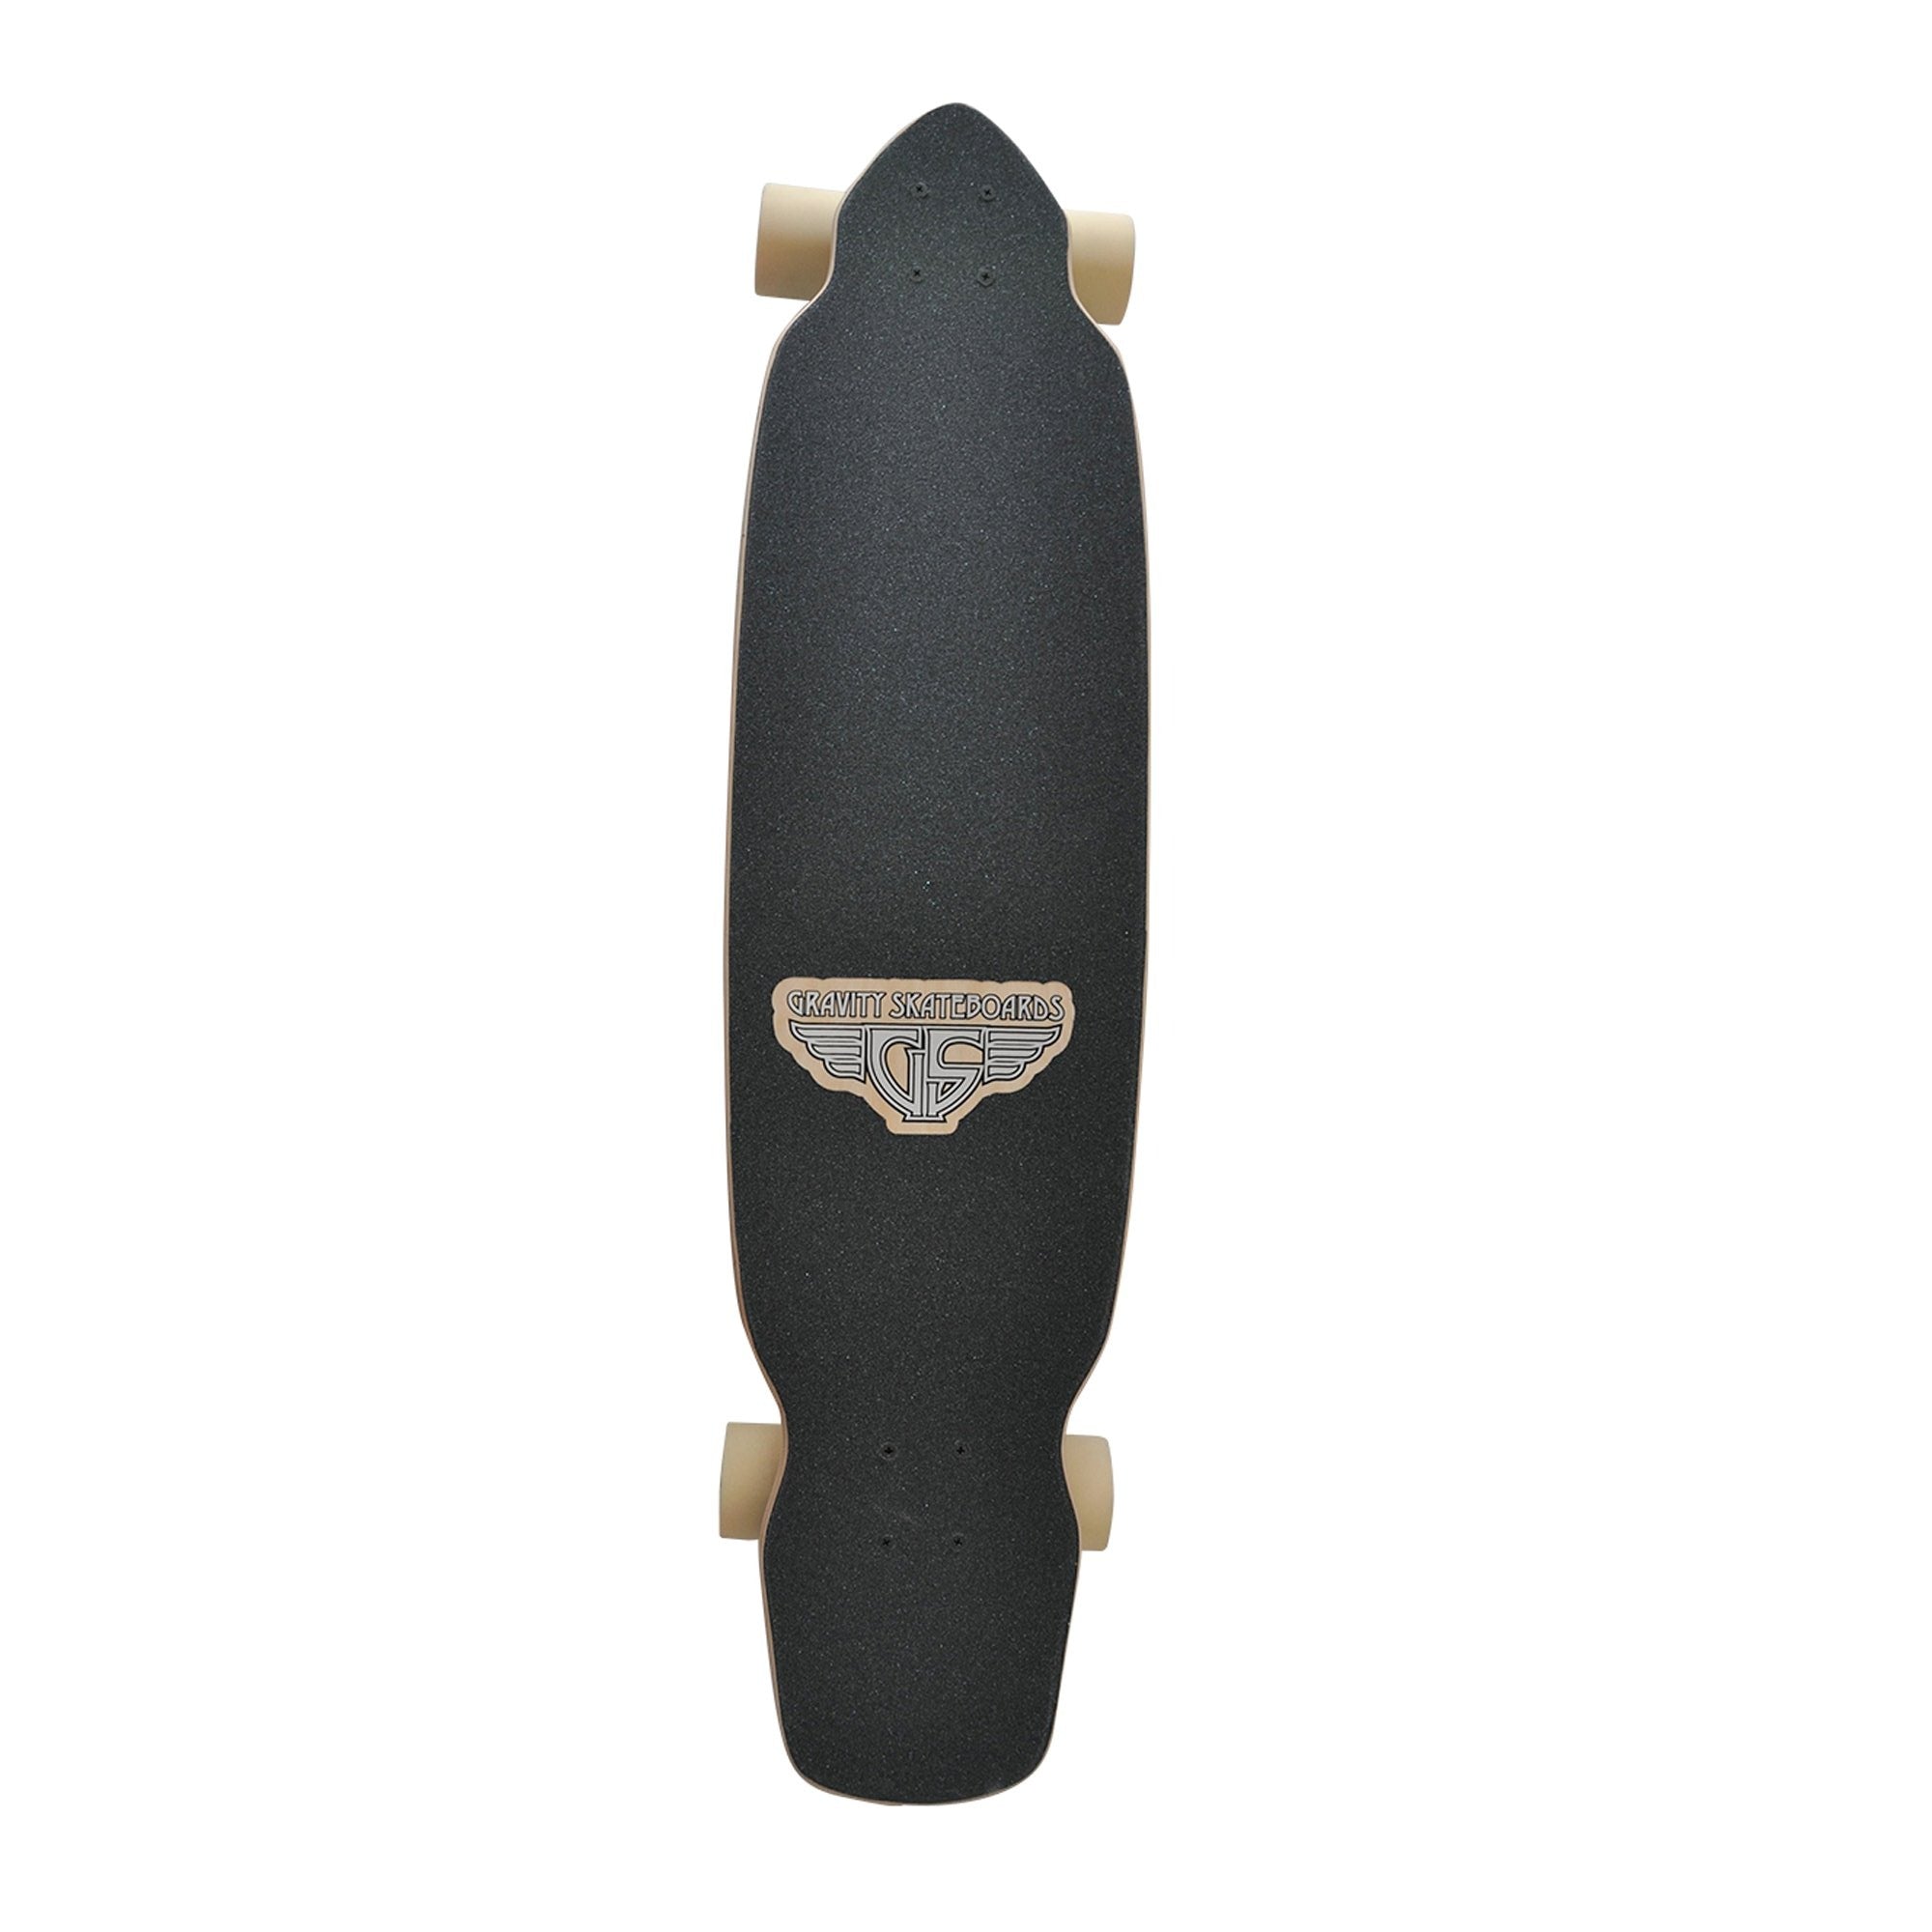 Gravity Wavy 39" Longboard Skateboard